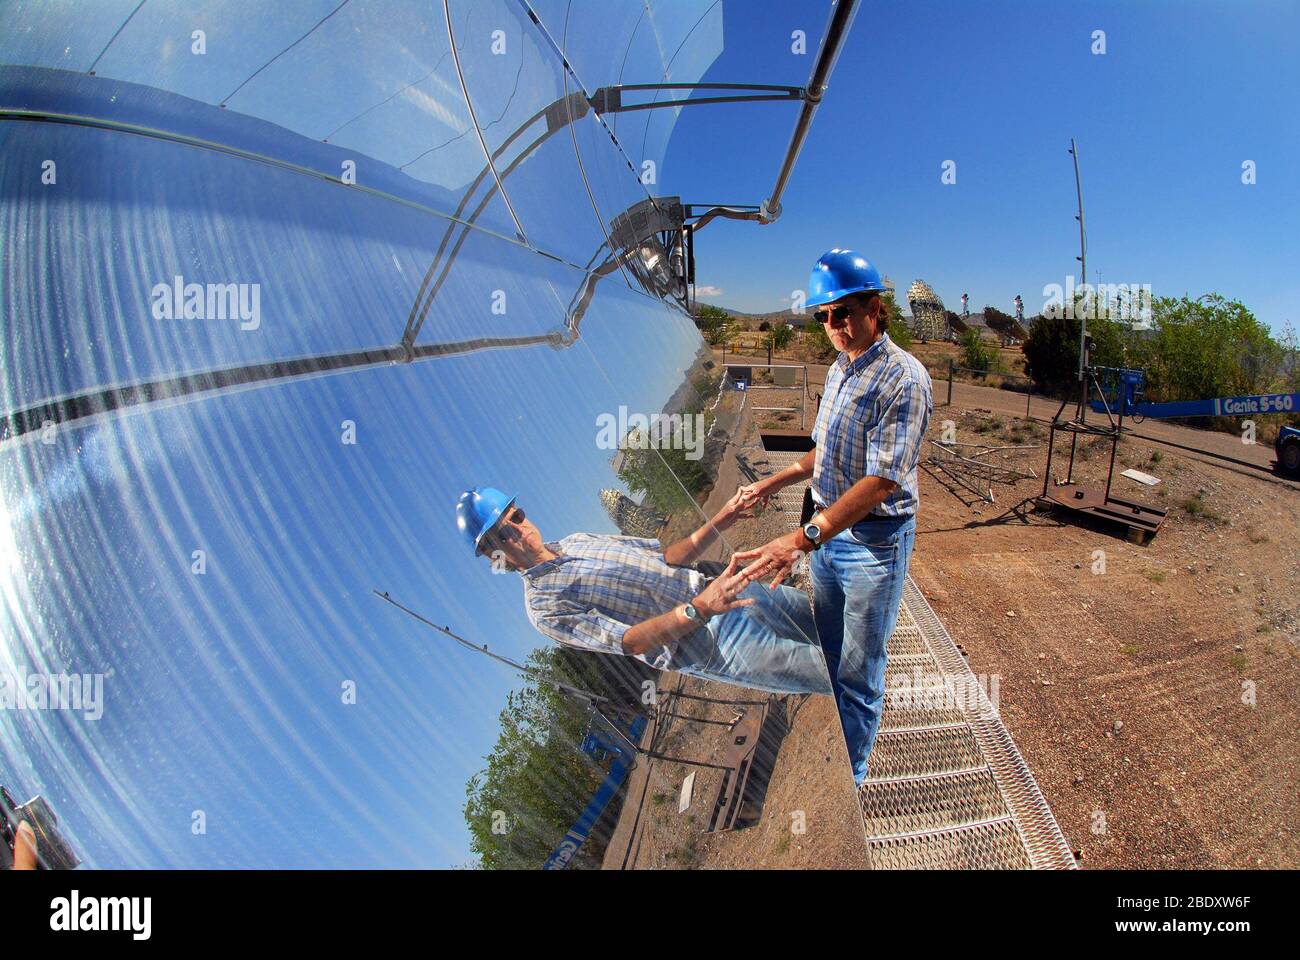 Parabolrinne Sonnenkollektor Stockfoto